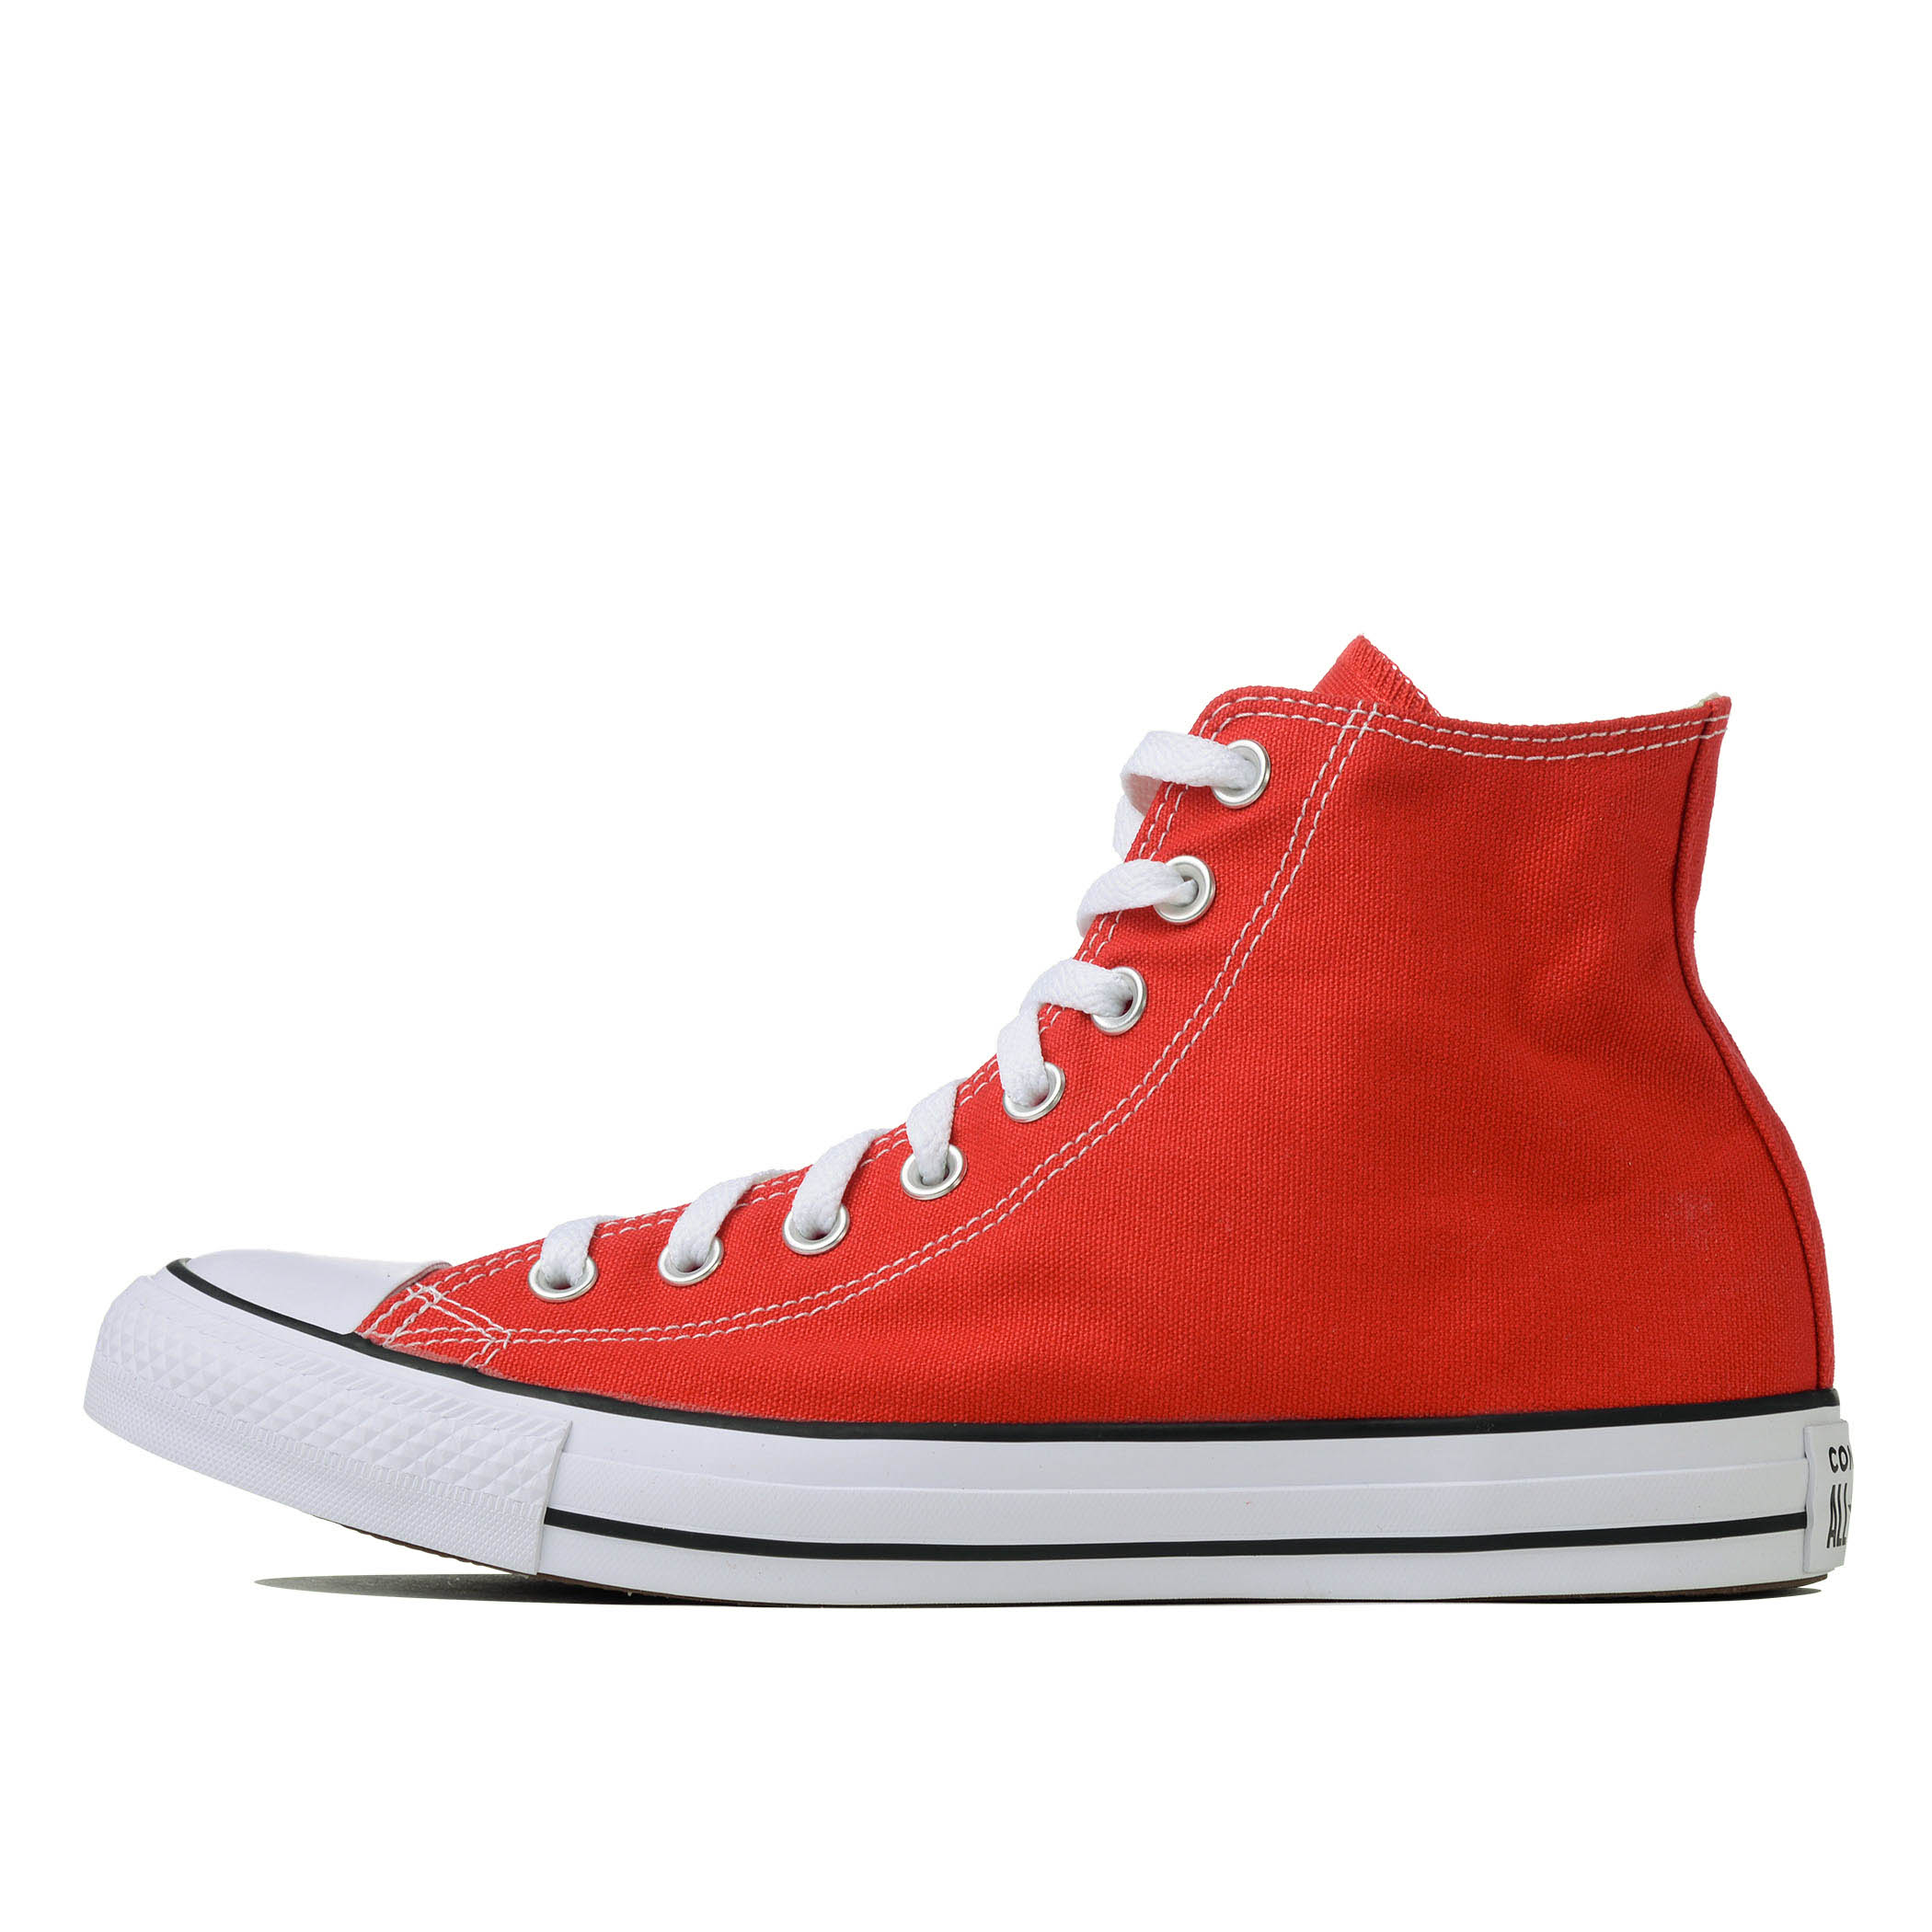 мужские кеды Converse (Конверс) - купить, цены на сайте интернет-магазина  молодежной одежды Street Beat с доставкой в город Москва